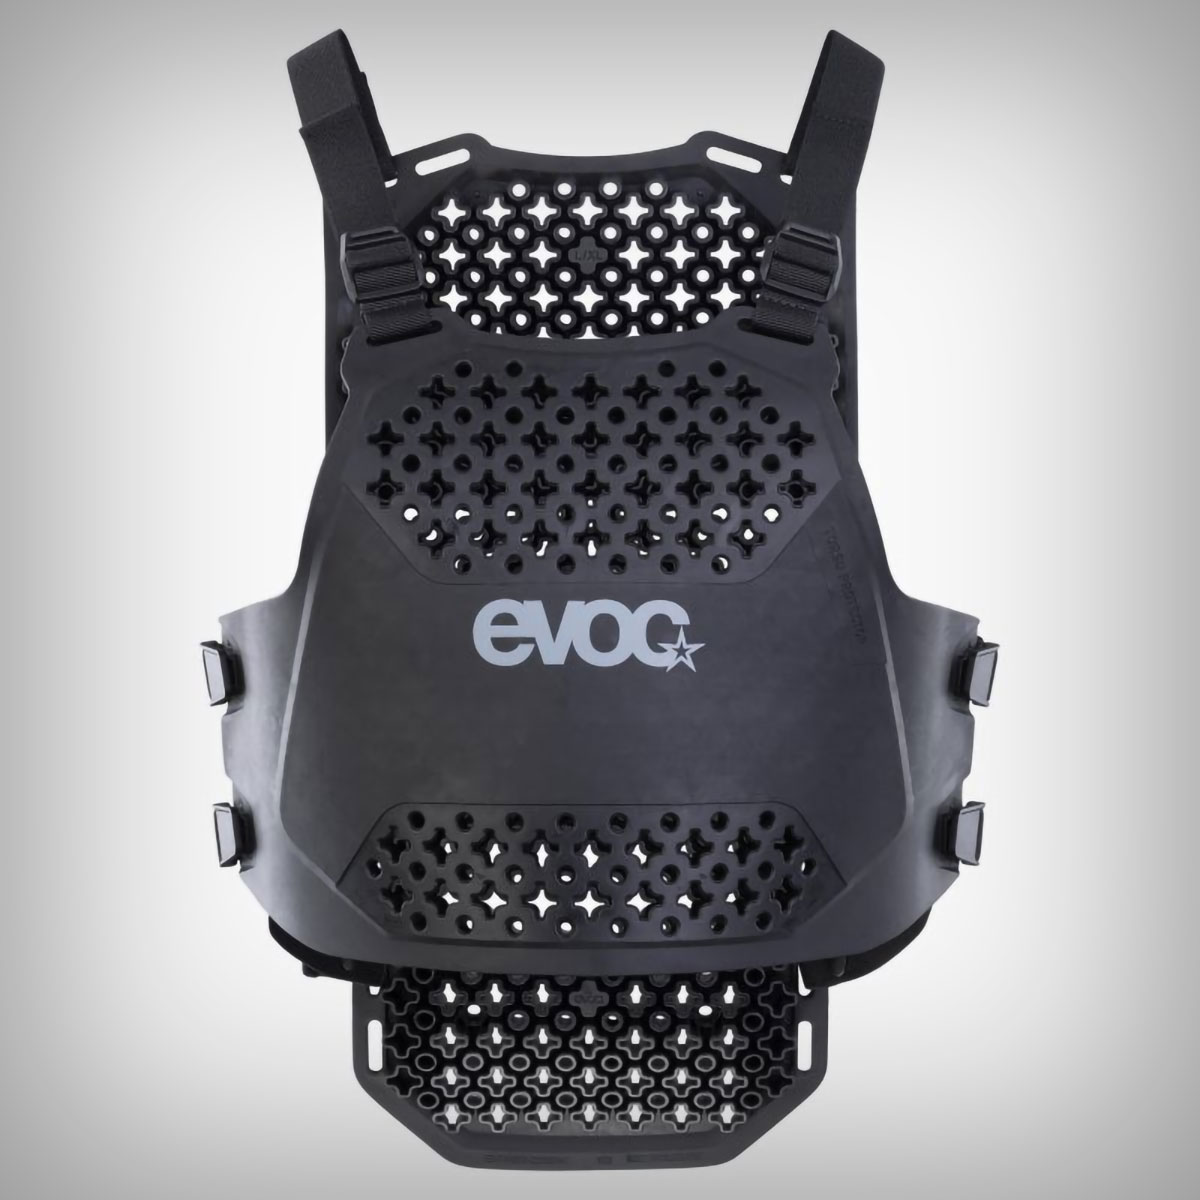 EVOC presenta el Torso Protector, un protector de espalda y pecho ultraflexible con un 95% de absorción de impactos